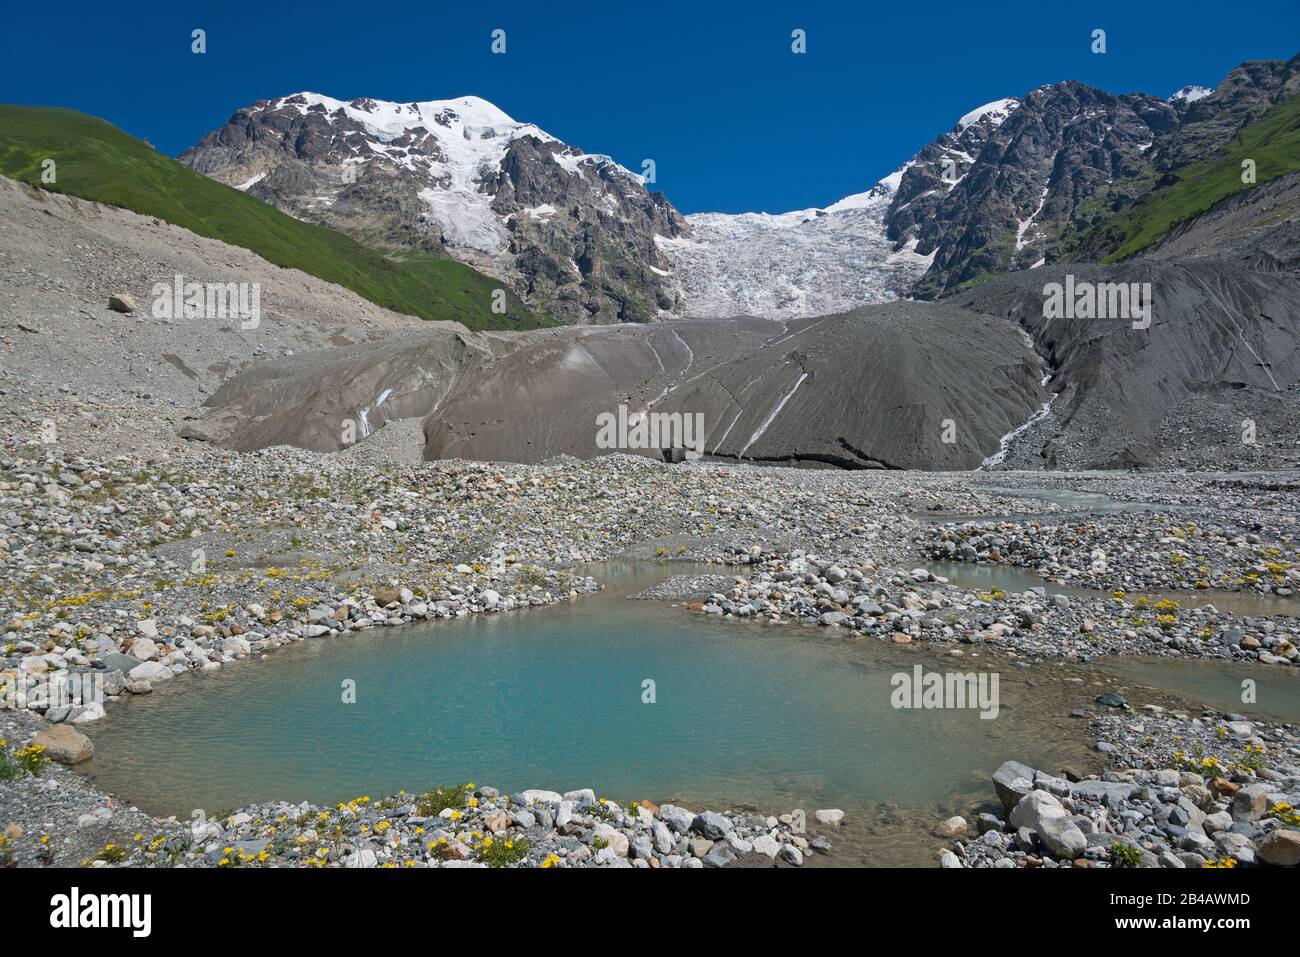 Berglandschaft. Großer Gletscher vor blauem Himmelshintergrund. Kleiner See (Vordergrund) am Fuß des Eisfalles. Stockfoto